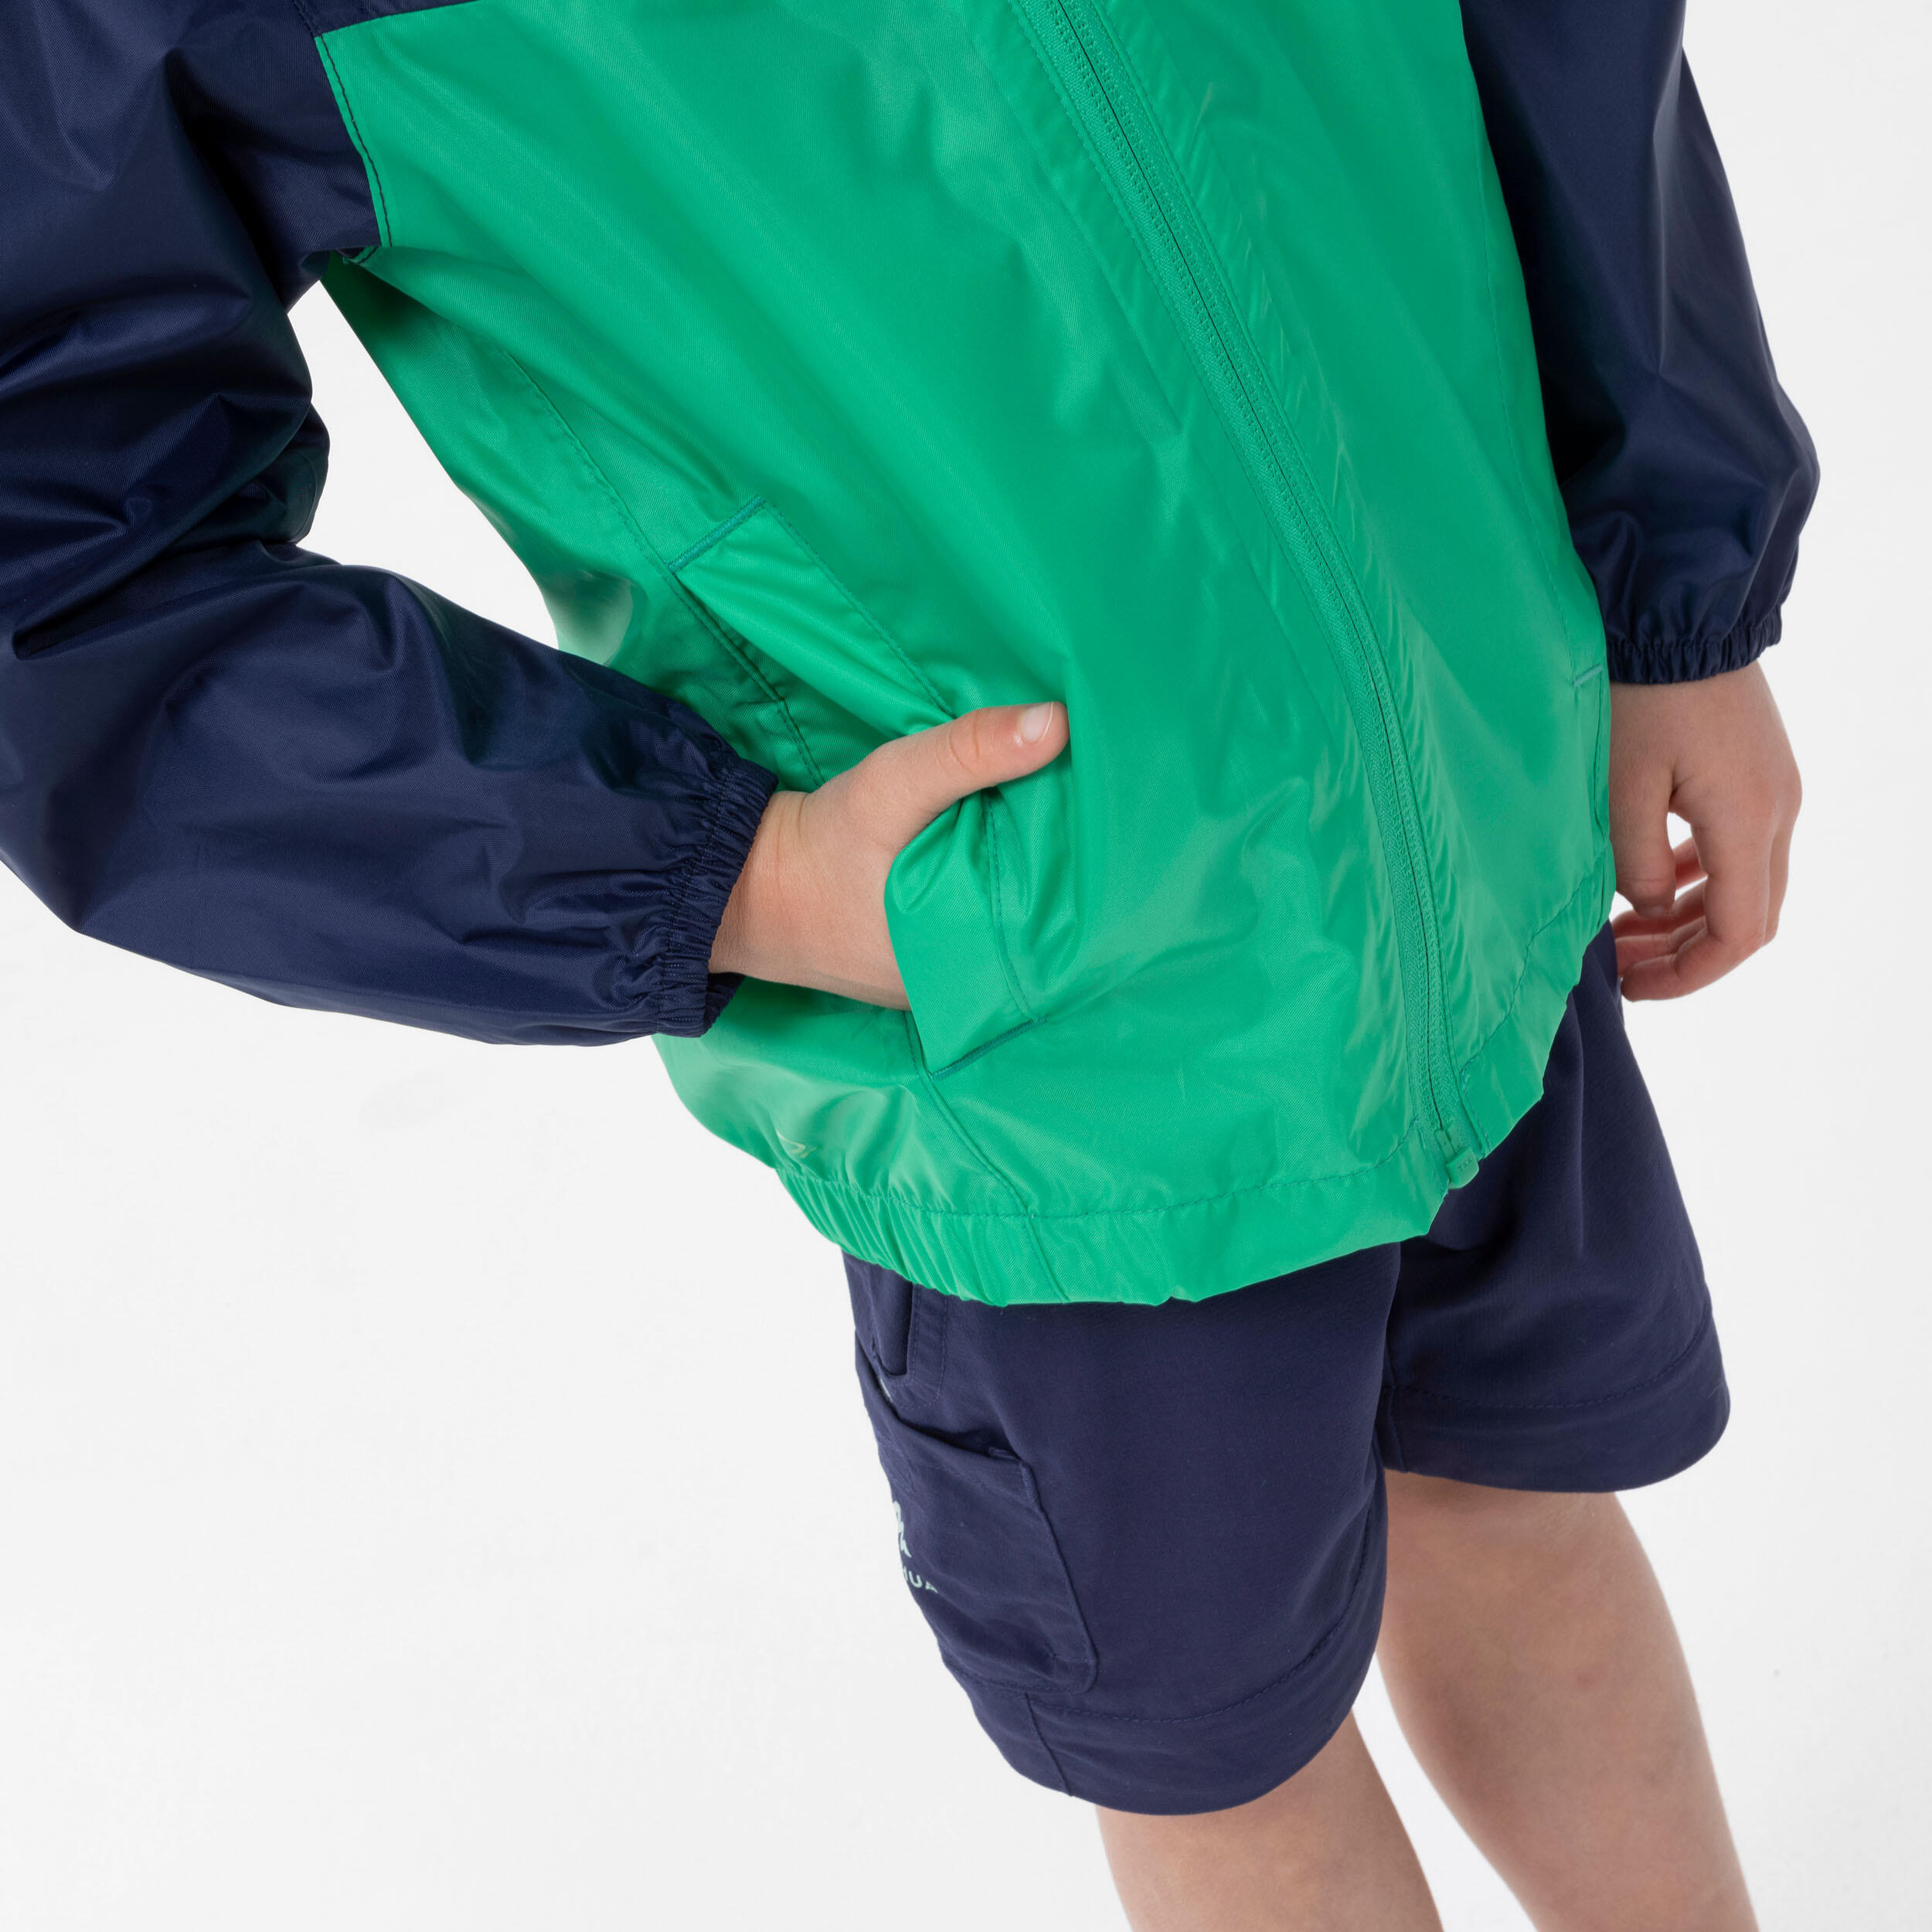 Kids’ Waterproof Hiking Jacket - MH100 Zip - Aged 2-6 8/8